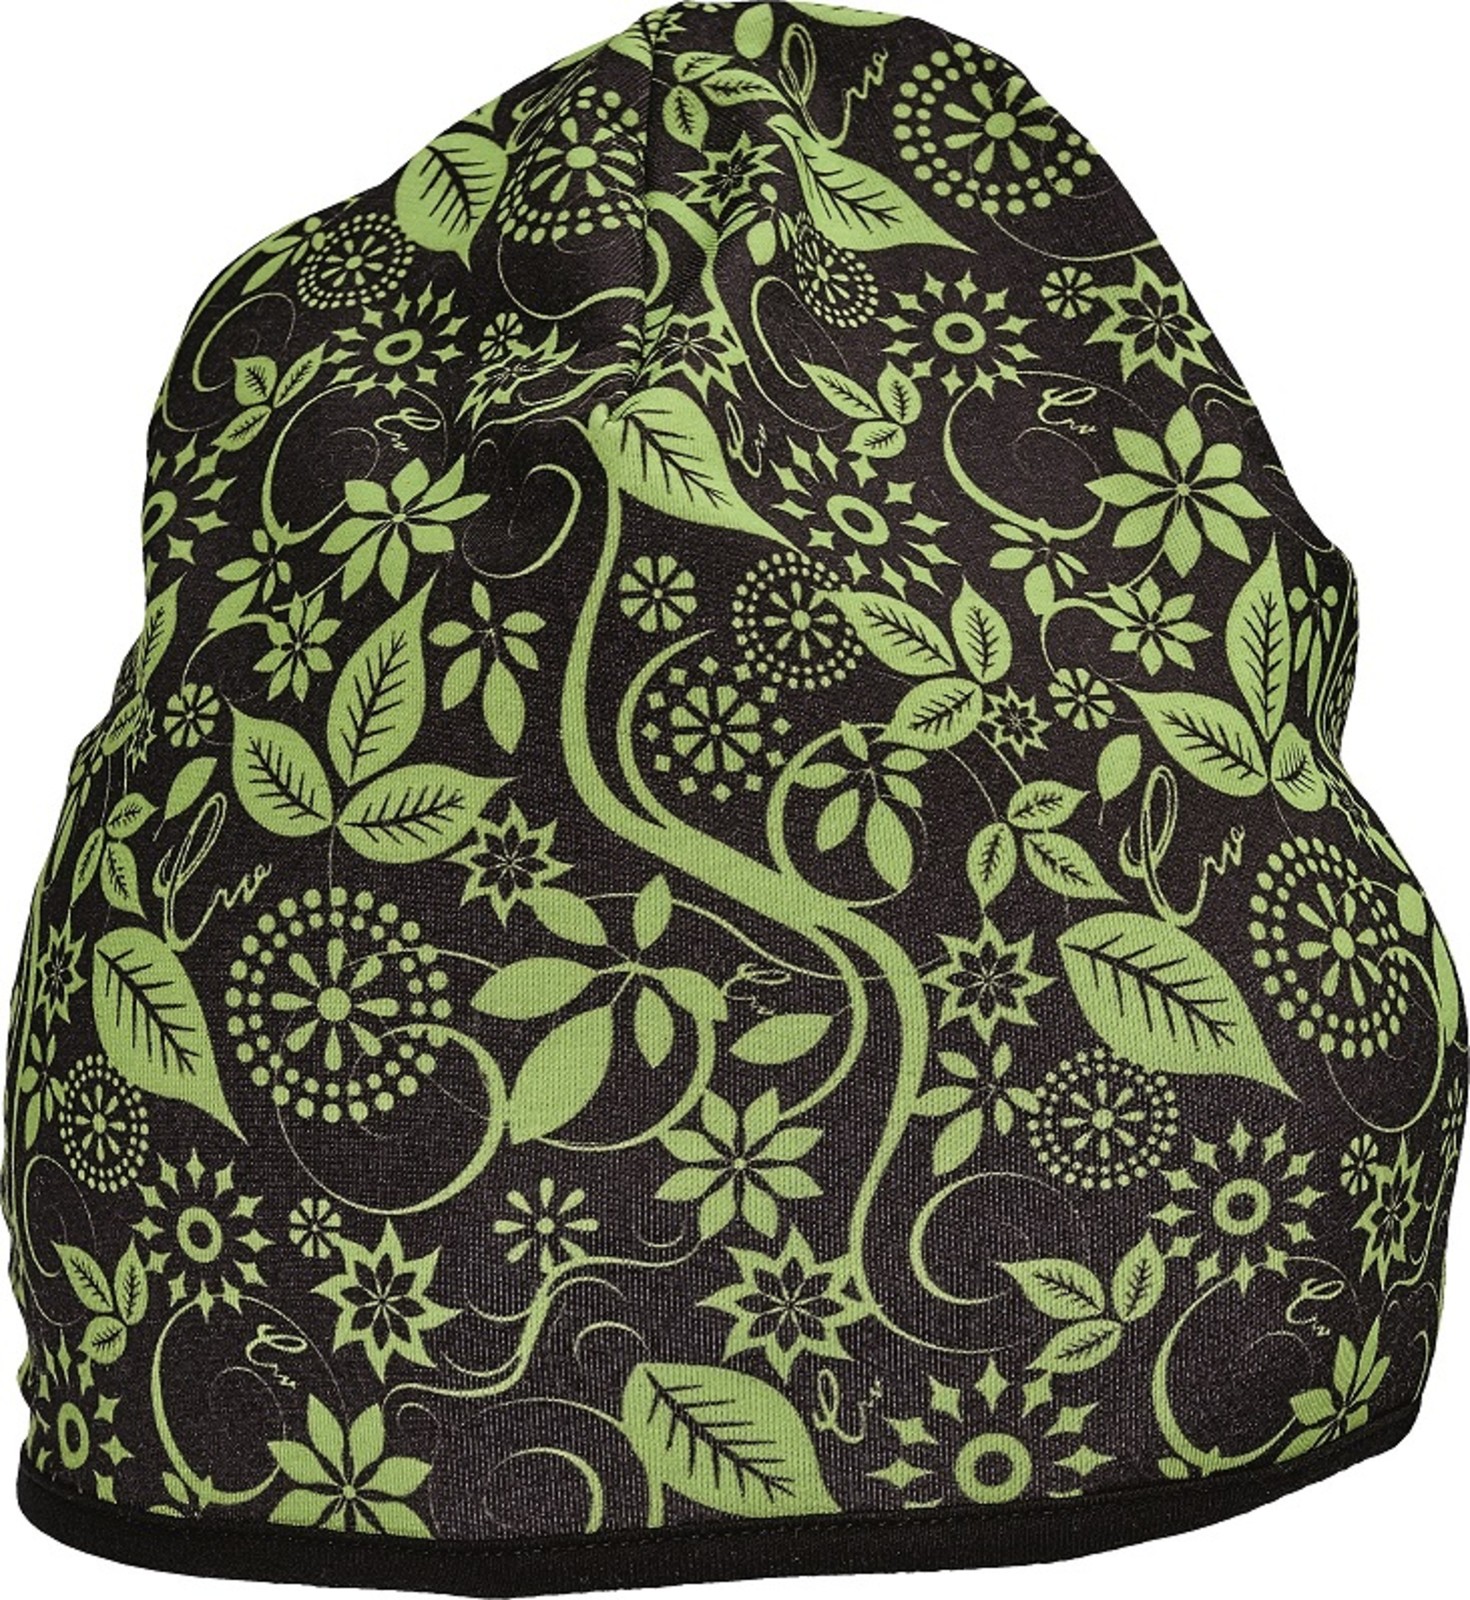 Dámska čiapka Yowie - veľkosť: S/M, farba: hnedá/zelená